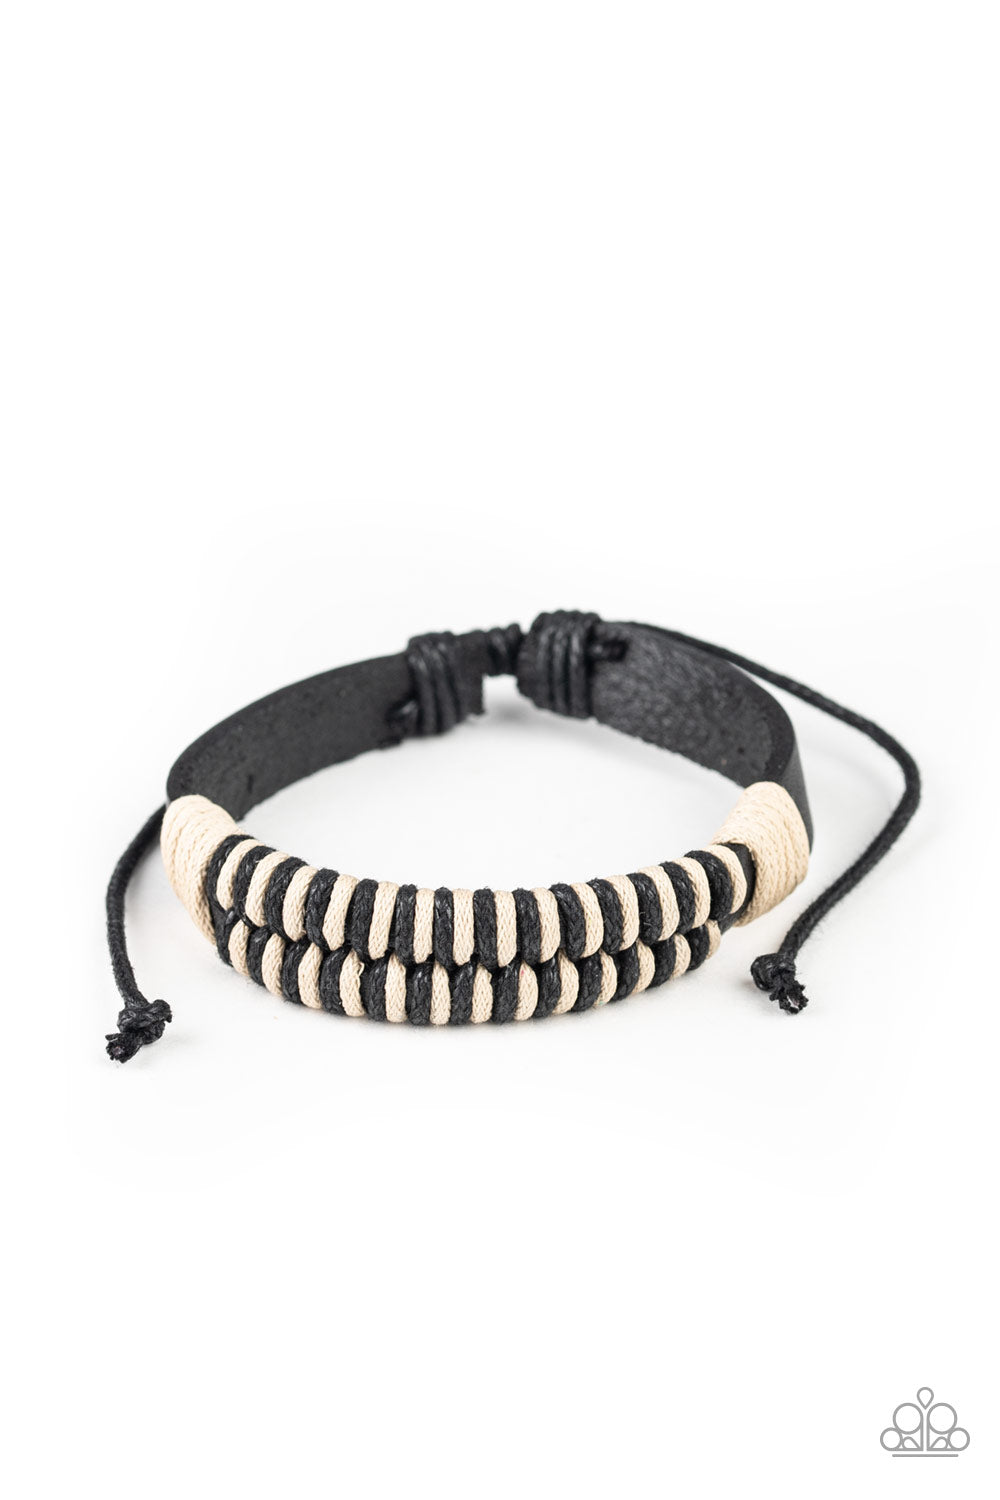 Paparazzi Trail Time - Black - Leather Urban Friendship - Bracelet - $5 Jewelry with Ashley Swint